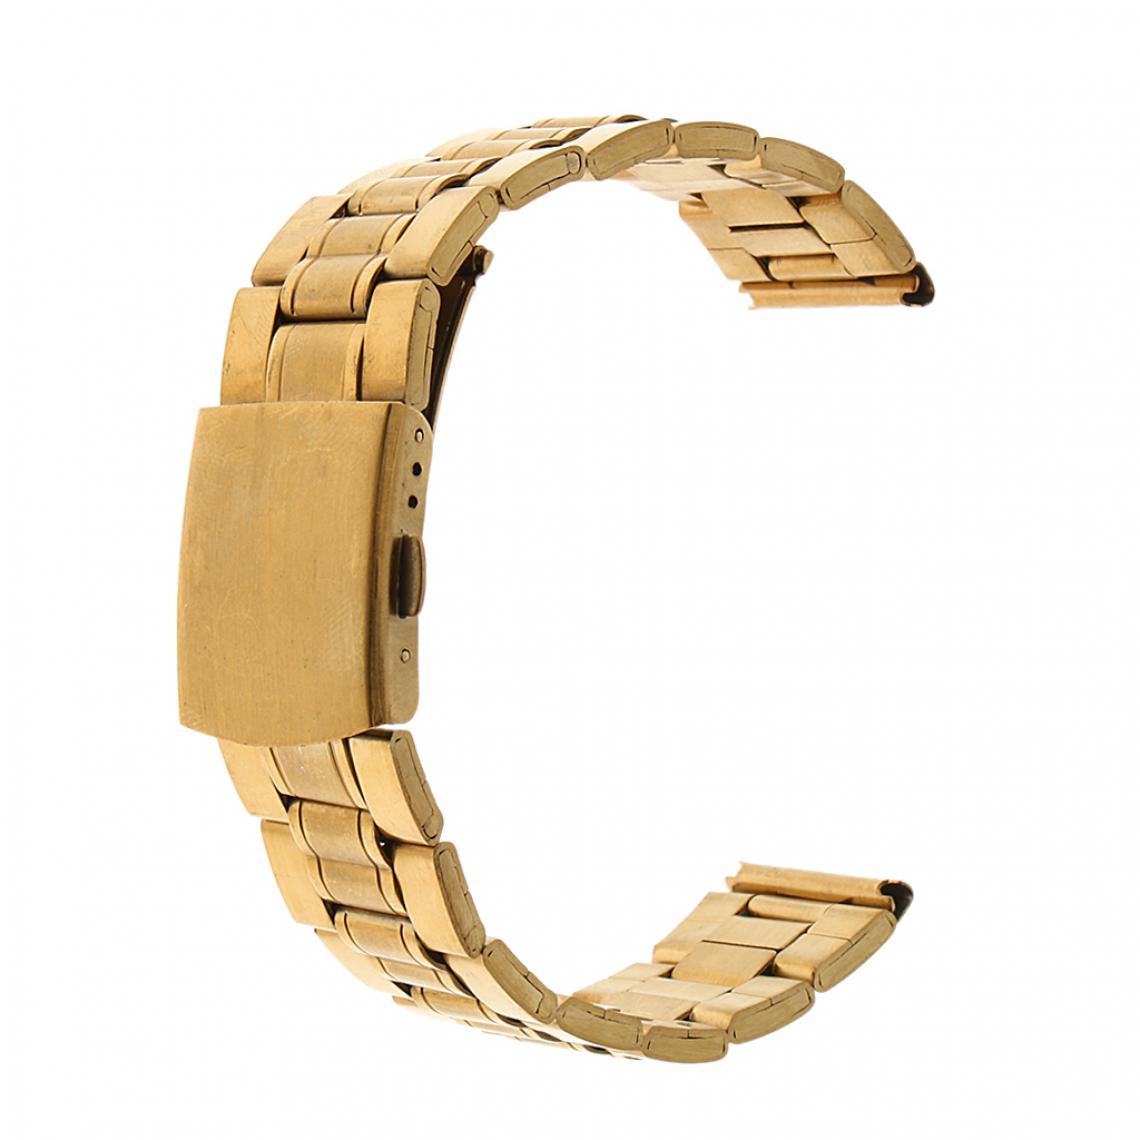 marque generique - Bracelet en métal 14mm de remplacement de bracelet en acier inoxydable pour hommes - Accessoires montres connectées